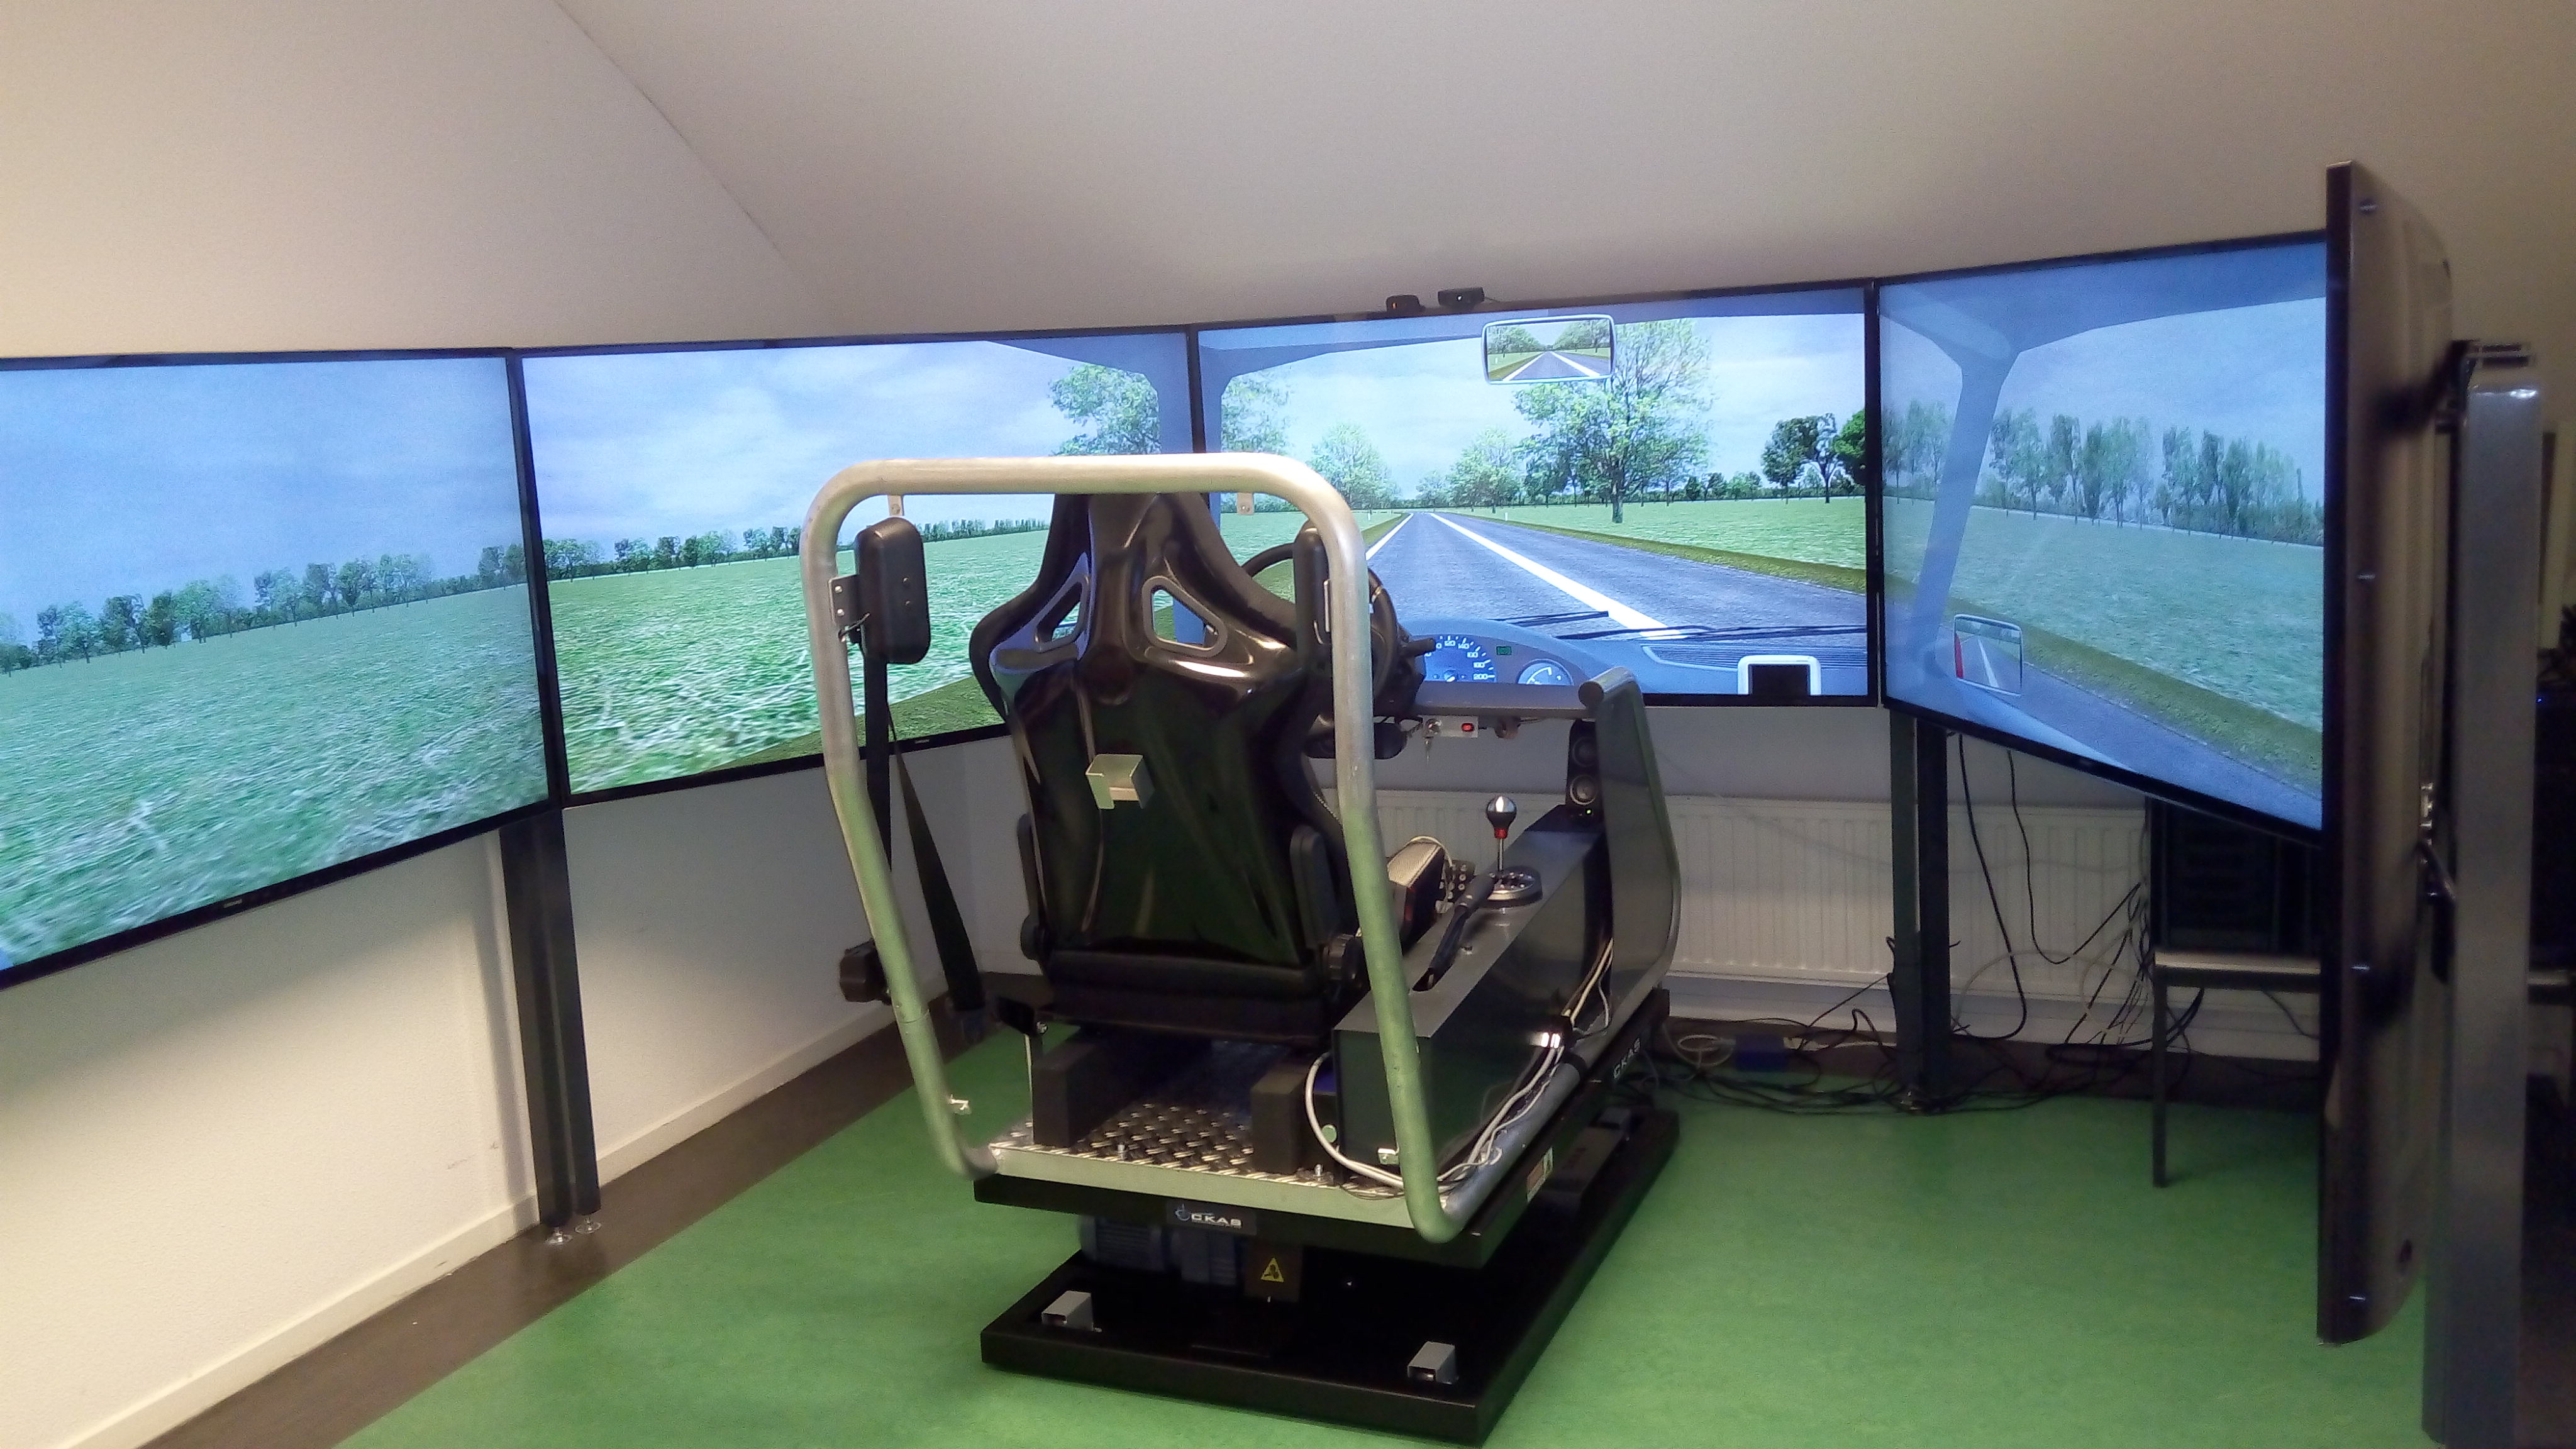 Onze nieuwe (sinds september 2016) moving base simulator, met vijf grote schermen en bescheiden maar effectief bewegingsplatform